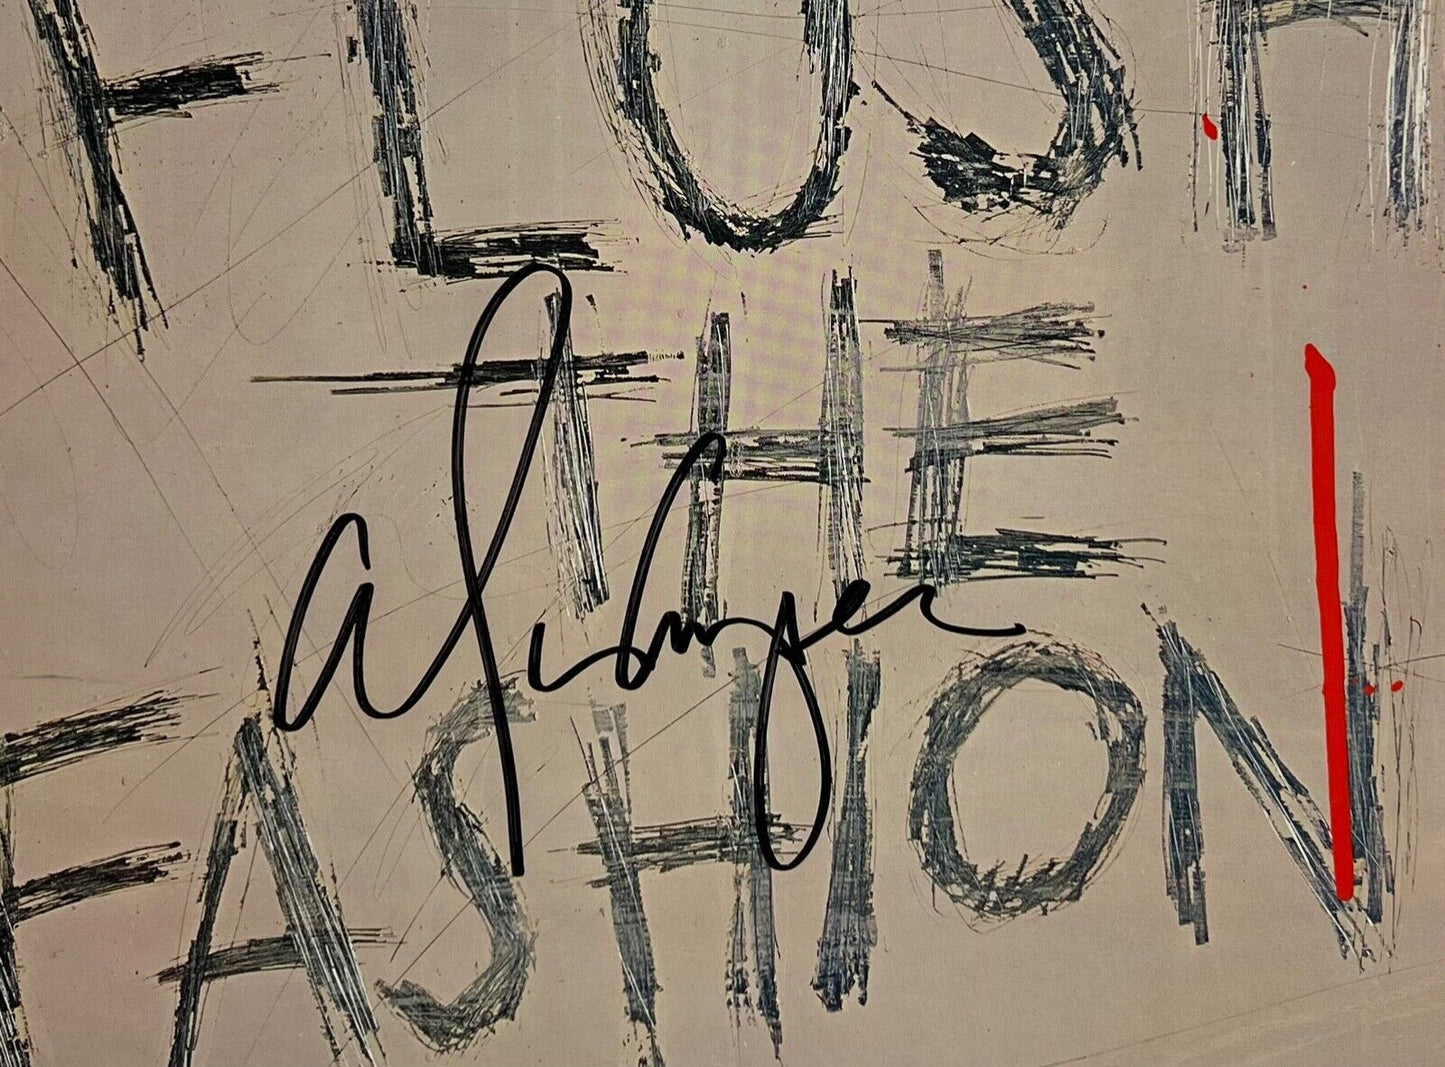 Alice Cooper JSA Signed Autograph Album Record LP Flush The Fashion